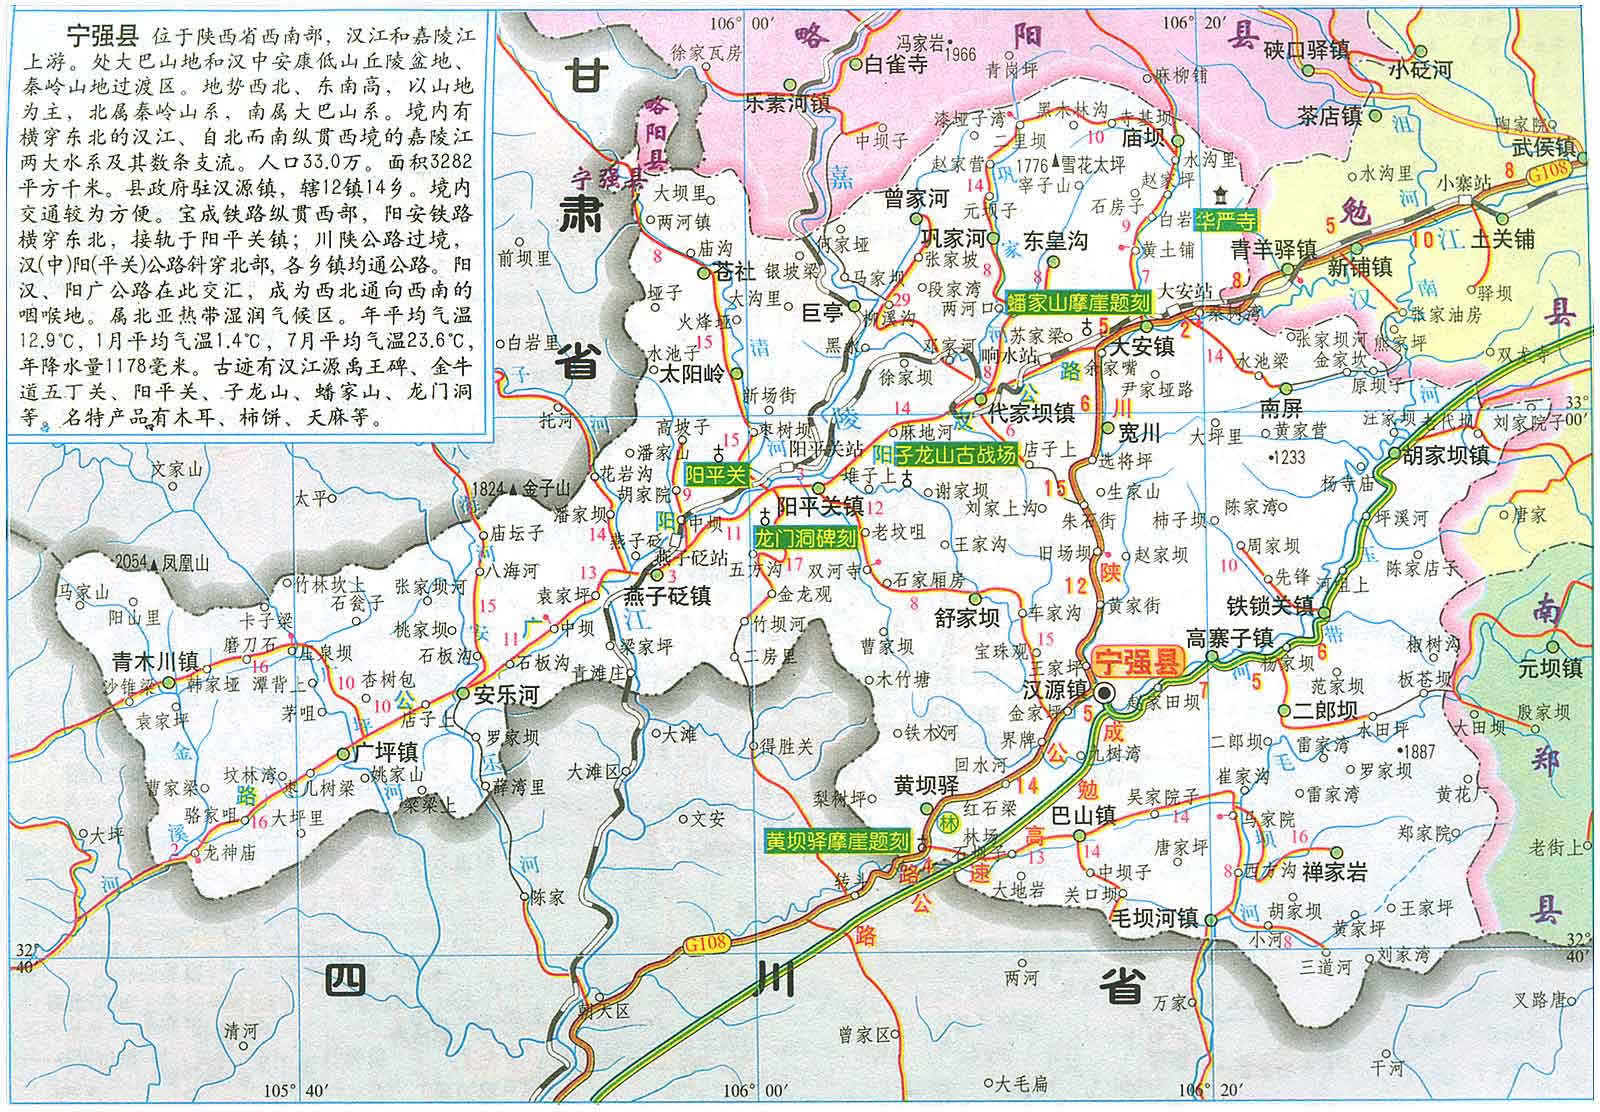 宁强县行政区划,交通地图,人口面积,地理位置,风景,等